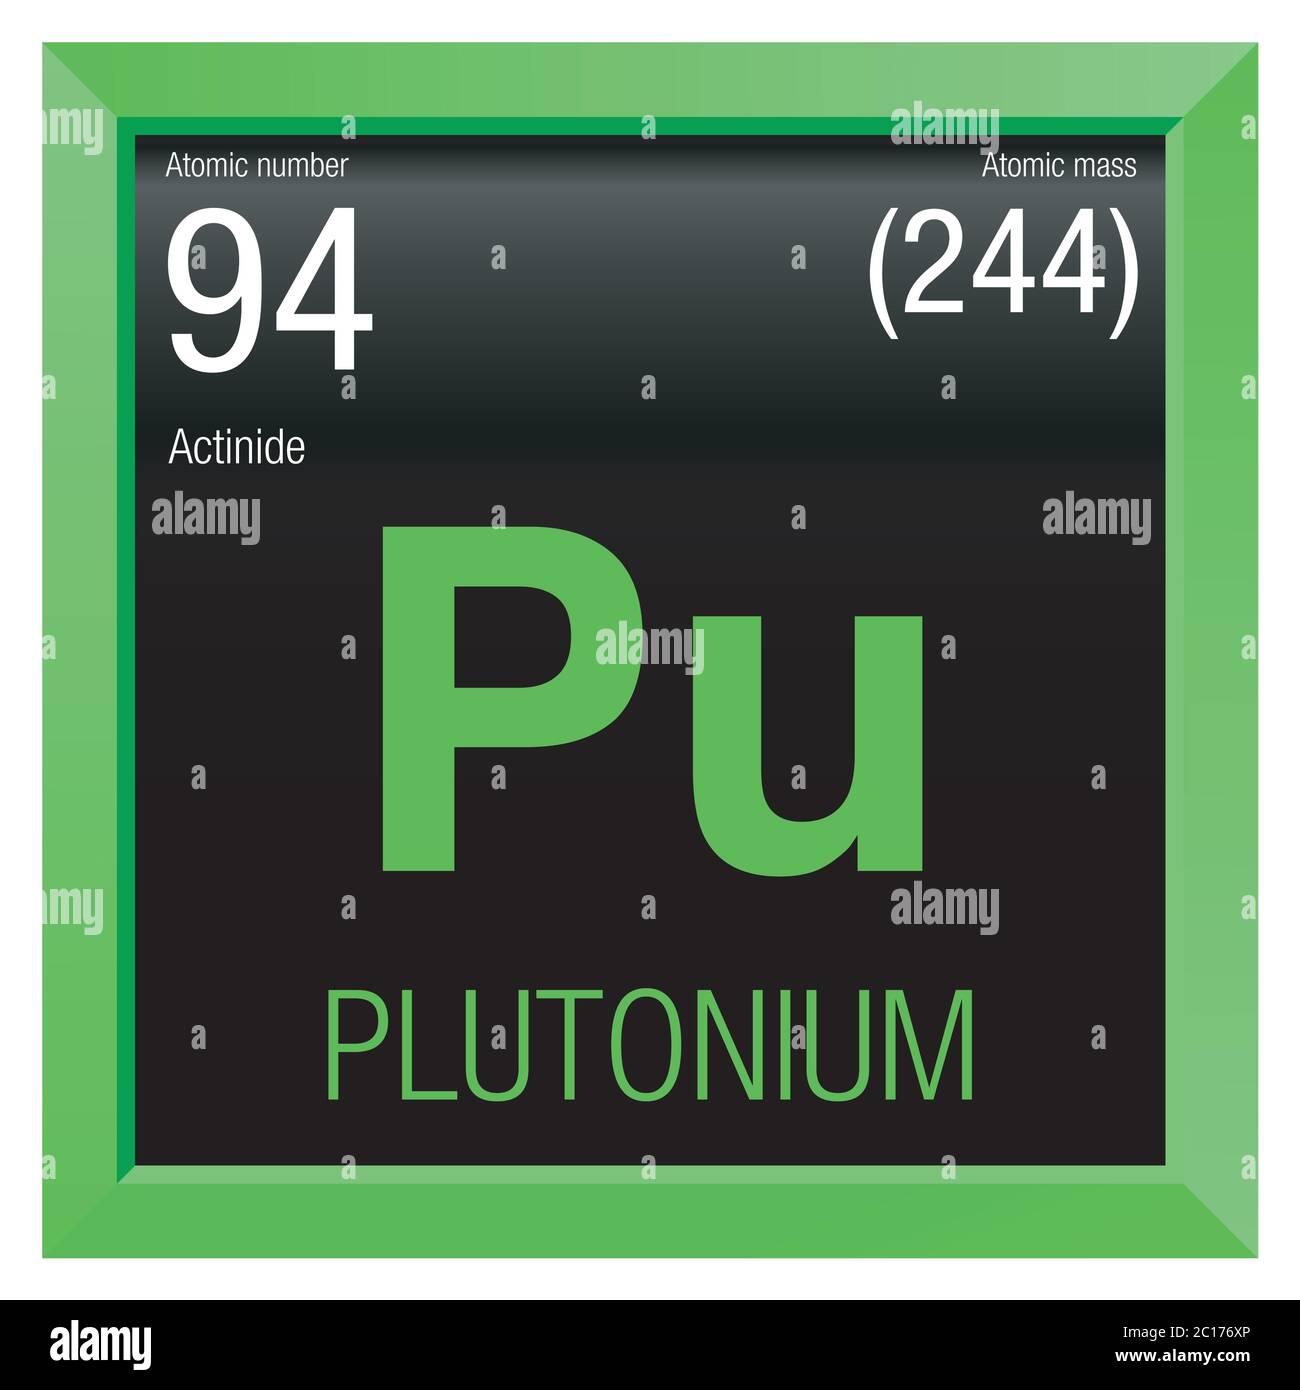 Boum 2 Avril 2022 Symbole-plutonium-element-numero-94-du-tableau-periodique-des-elements-chimie-cadre-carre-vert-avec-fond-noir-2c176xp